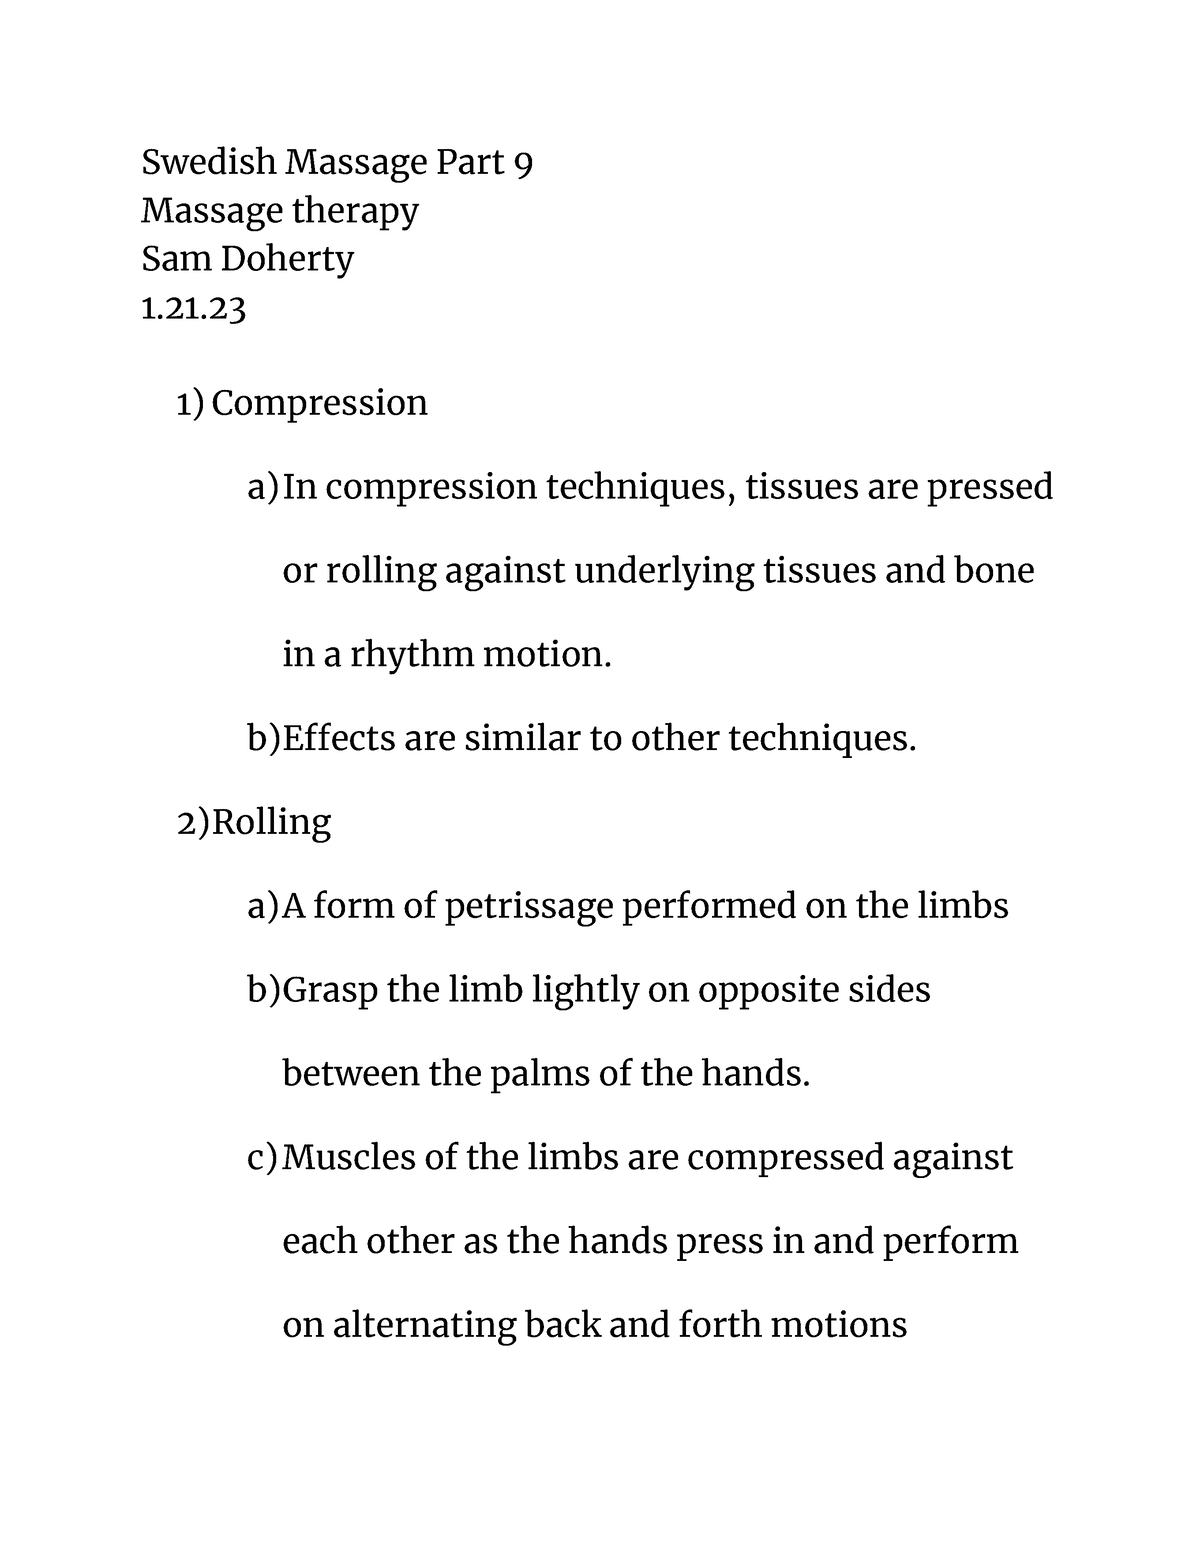 Swedish Massage Part 9 Notes Swedish Massage Part 9 Massage Therapy Sam Doherty 1